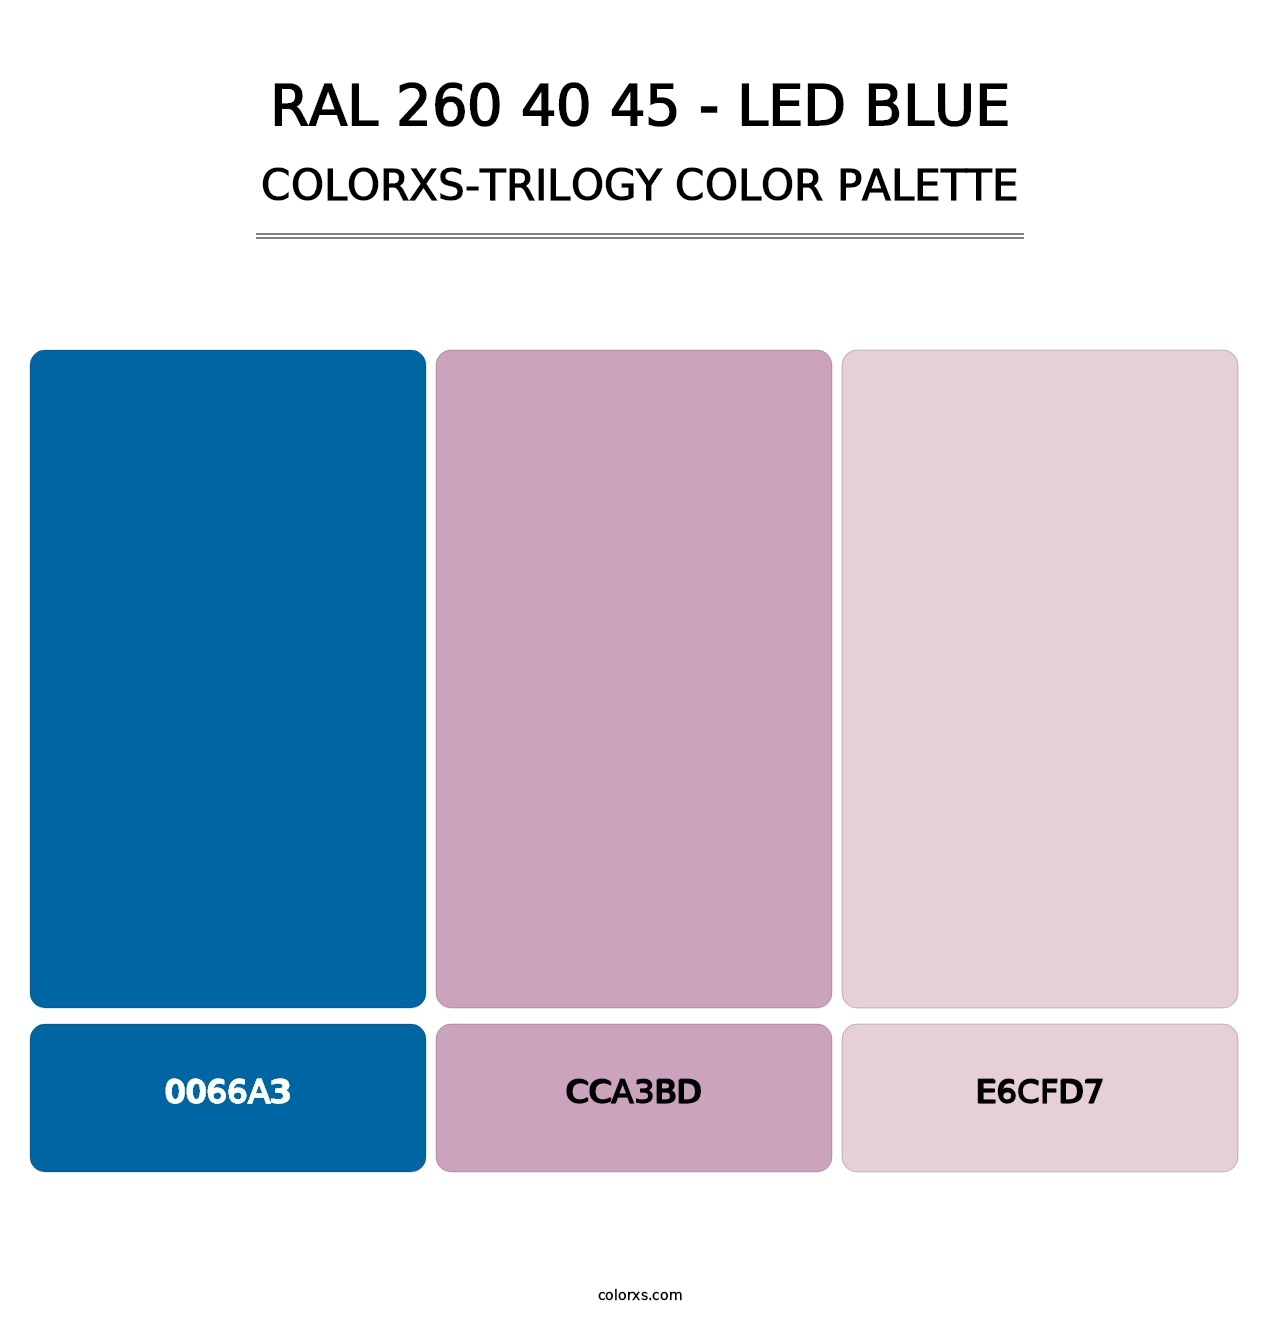 RAL 260 40 45 - LED Blue - Colorxs Trilogy Palette